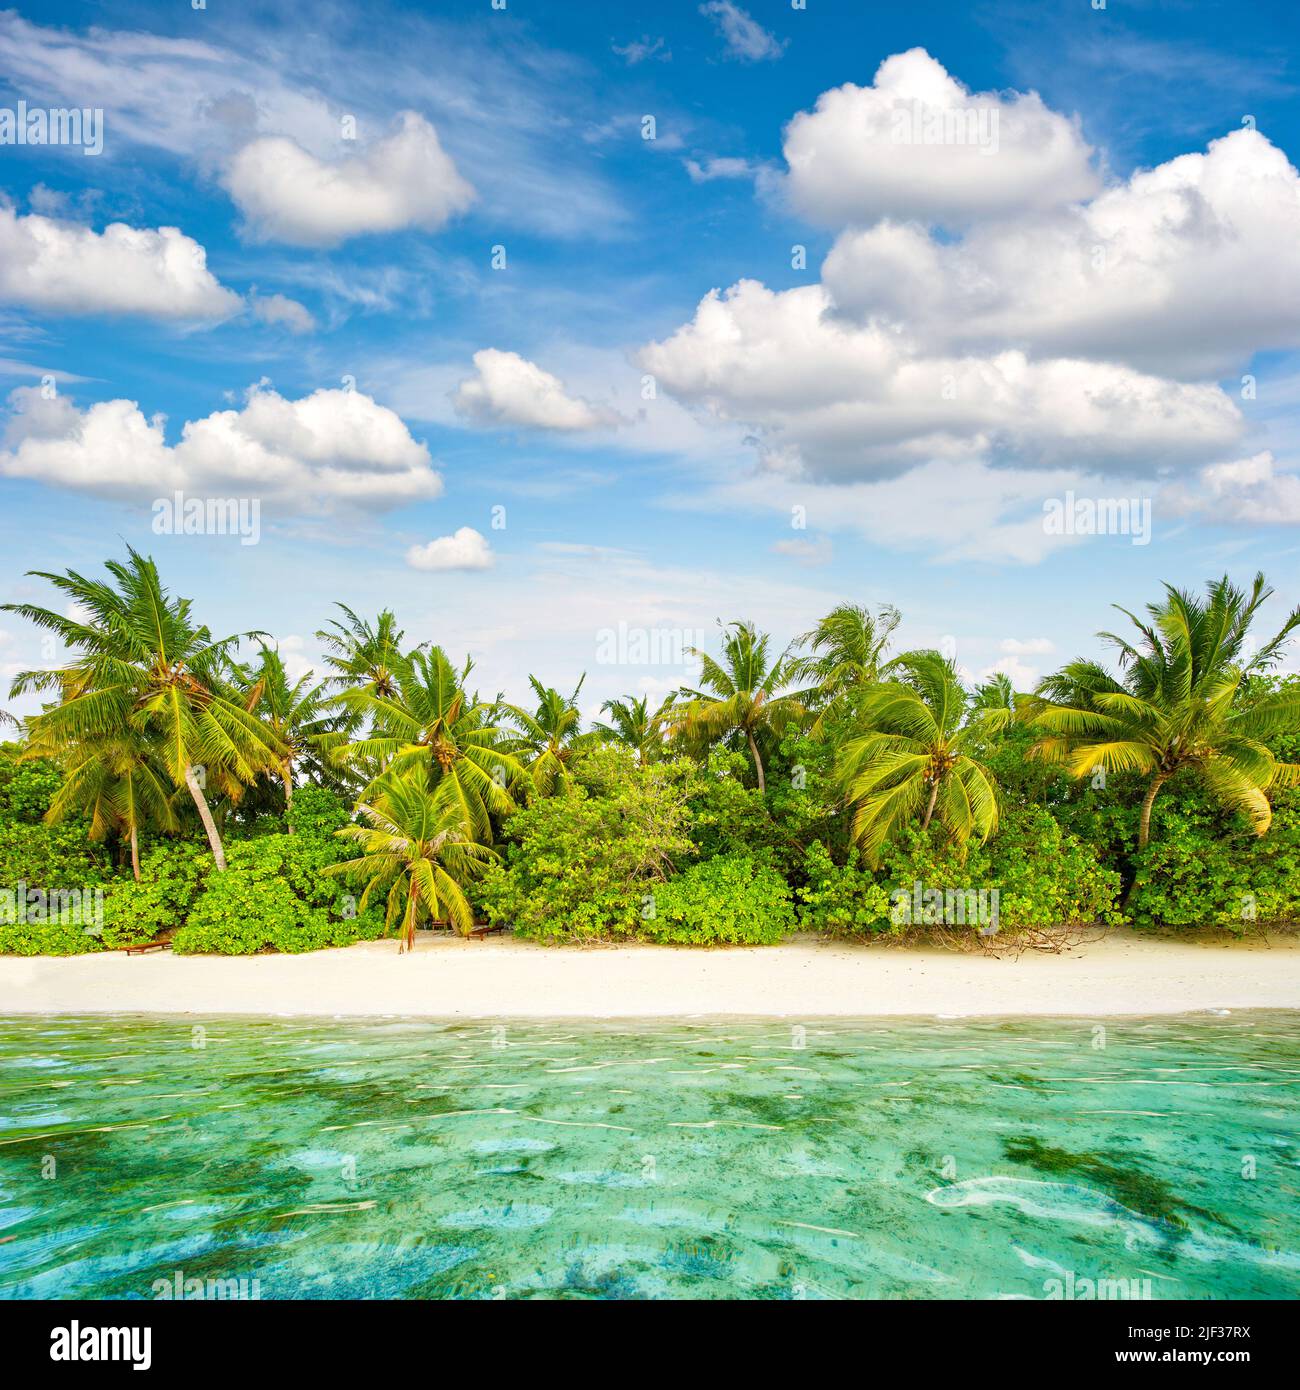 Vacances d'été. Plage de sable. Palmiers. Ciel bleu ciel nuageux. Paysage insulaire tropical Banque D'Images